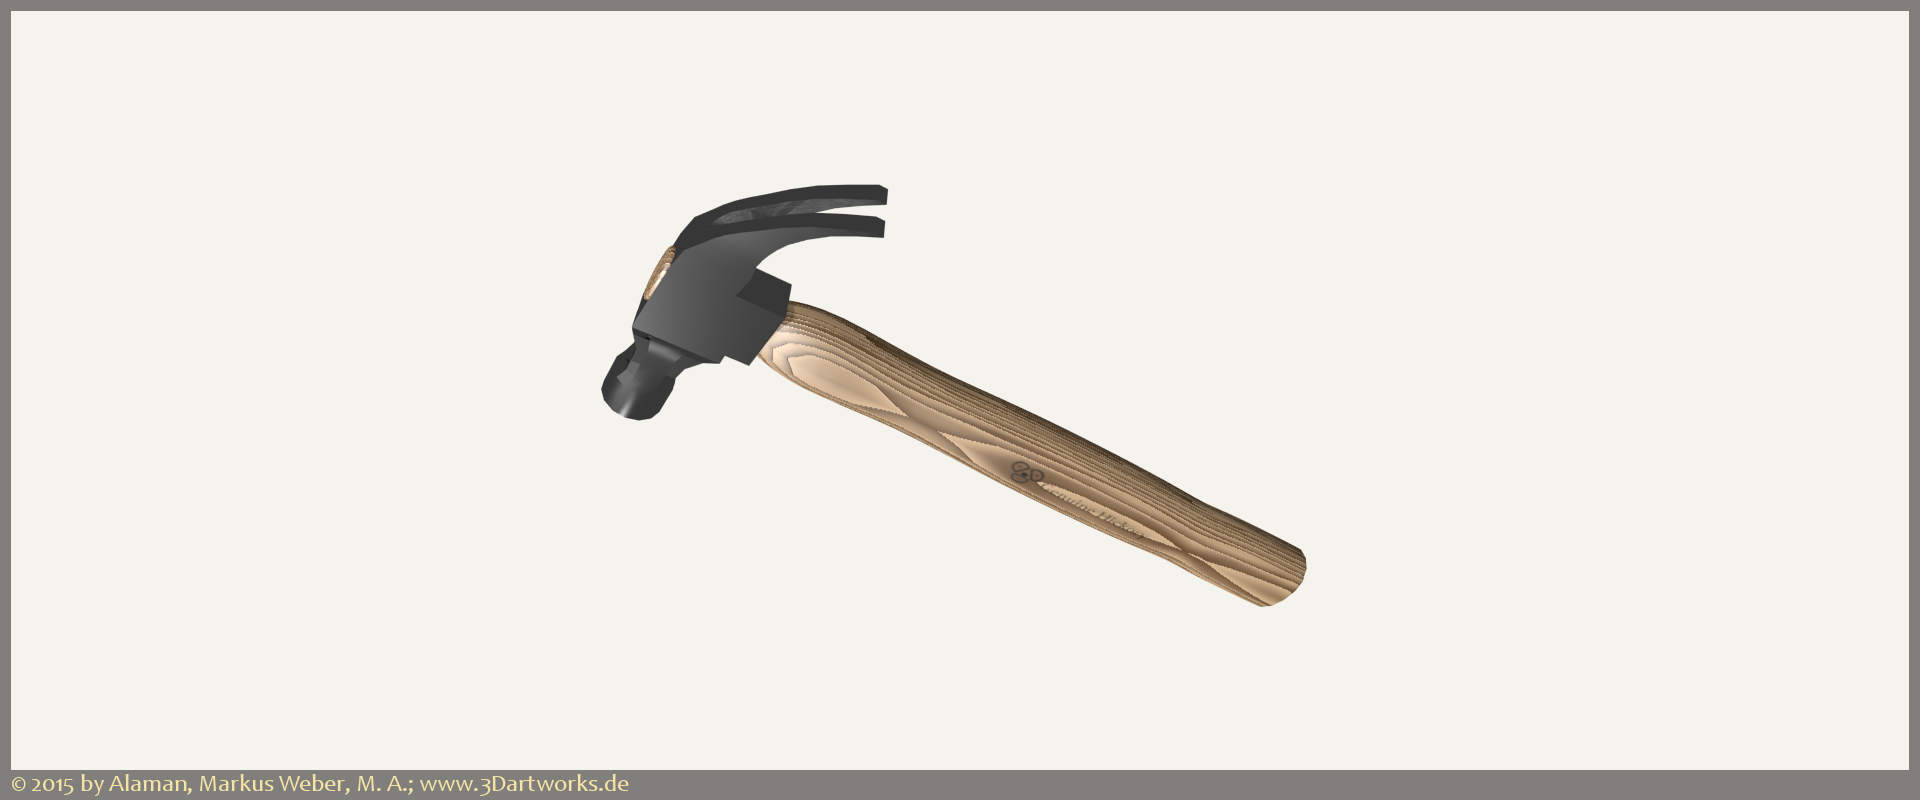 Travaux en cours à Alaman 3D Artworks : visualisation des produits, marteau à charpentier.